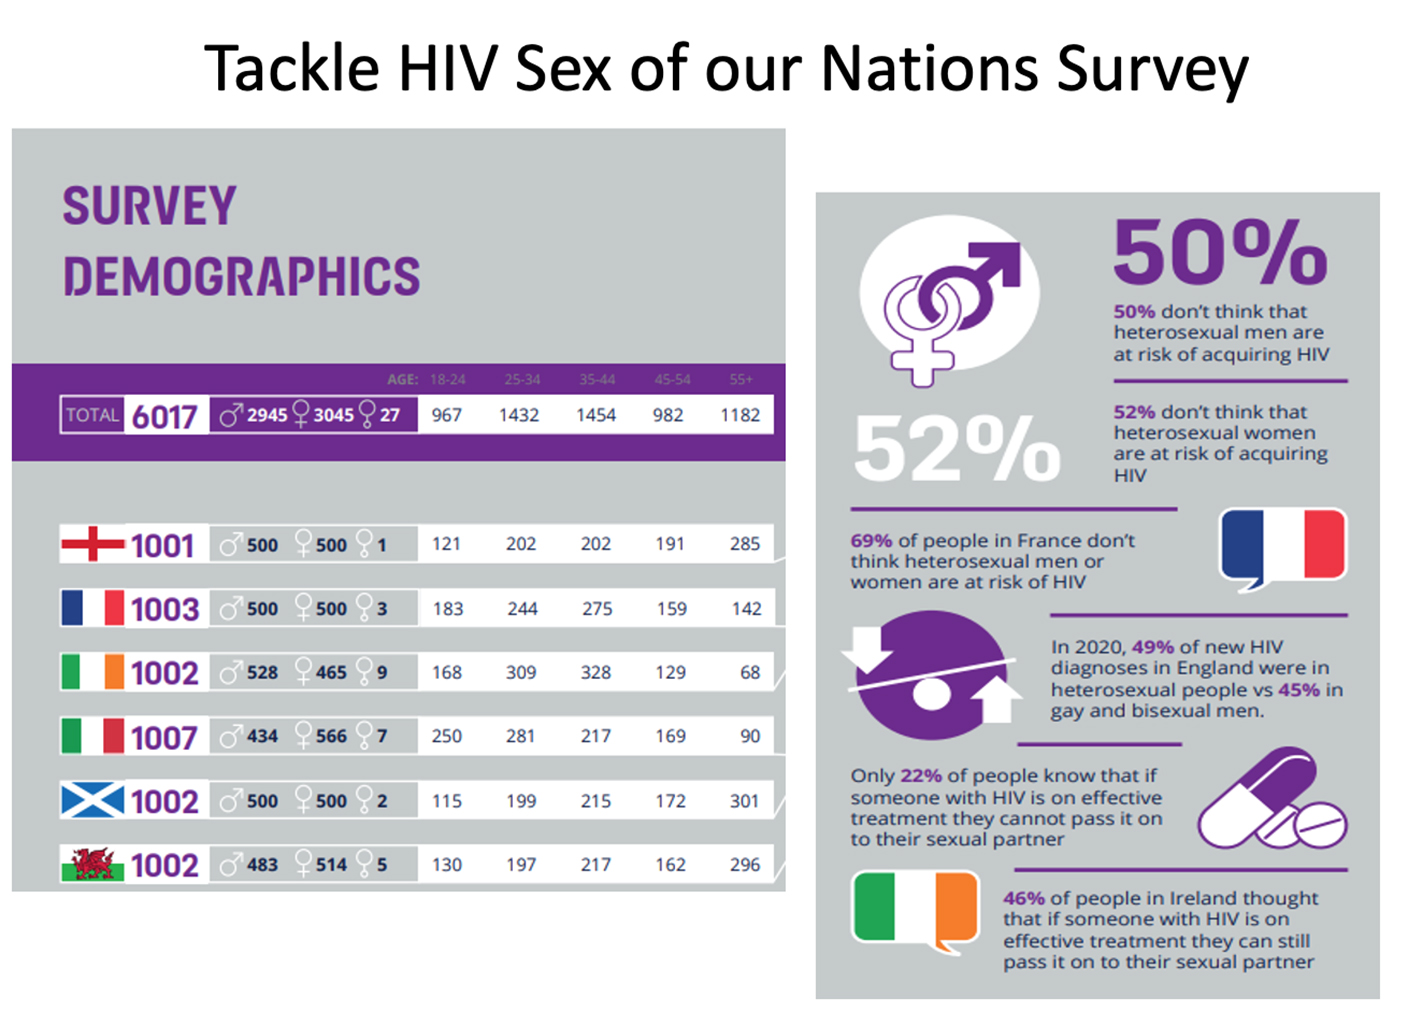 Dati demografici della campagna Tackle HIV “Sex of Our Nations”. Fonte immagine: Tacklehiv.org